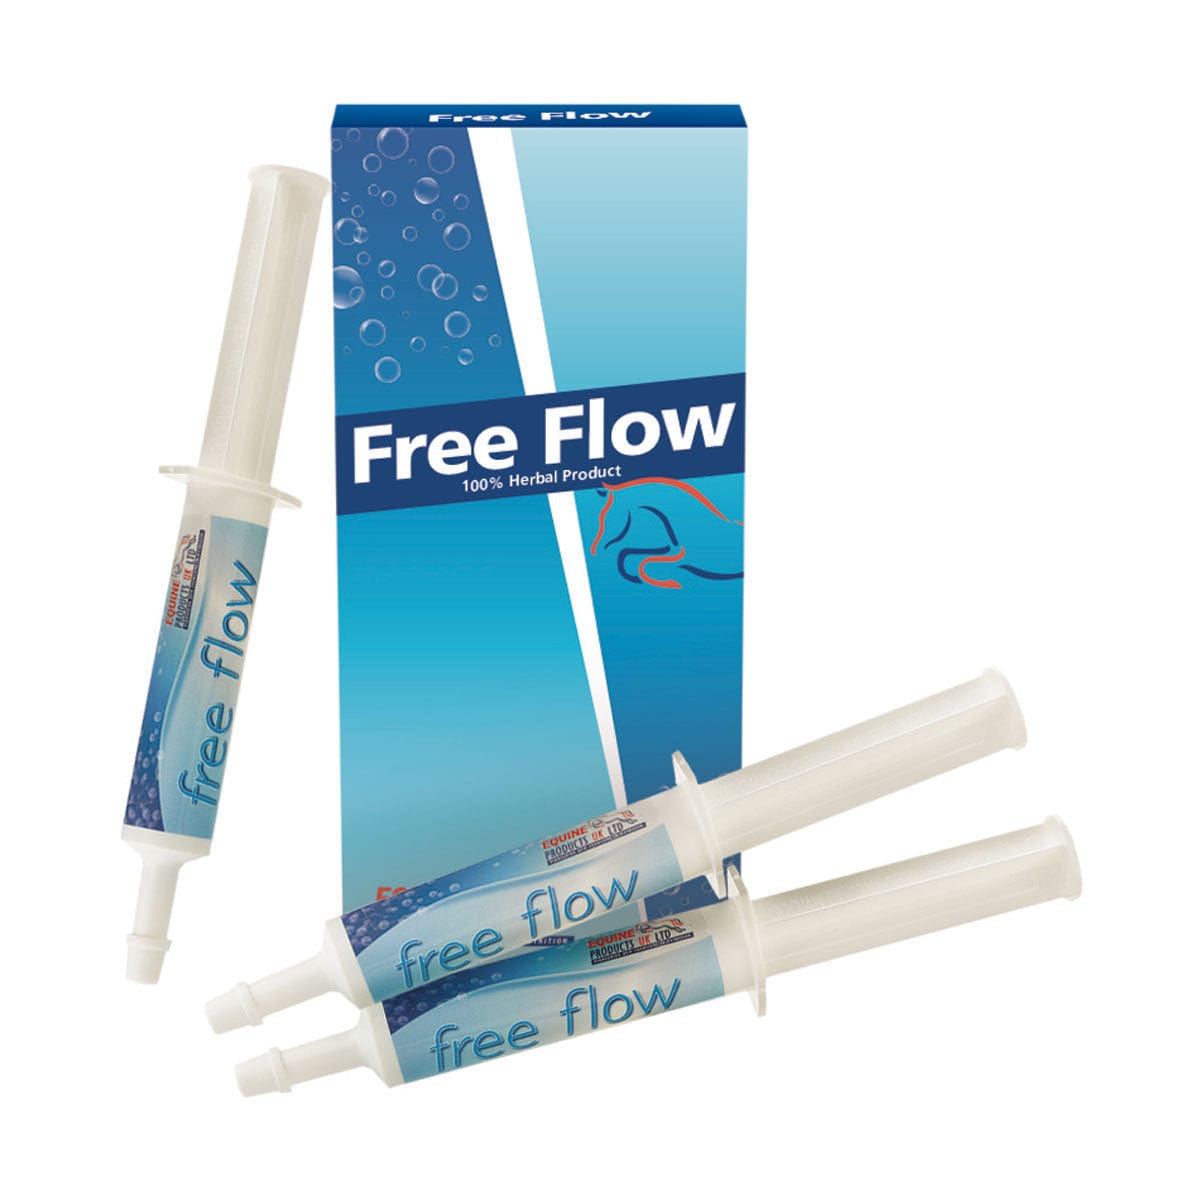 Free flow